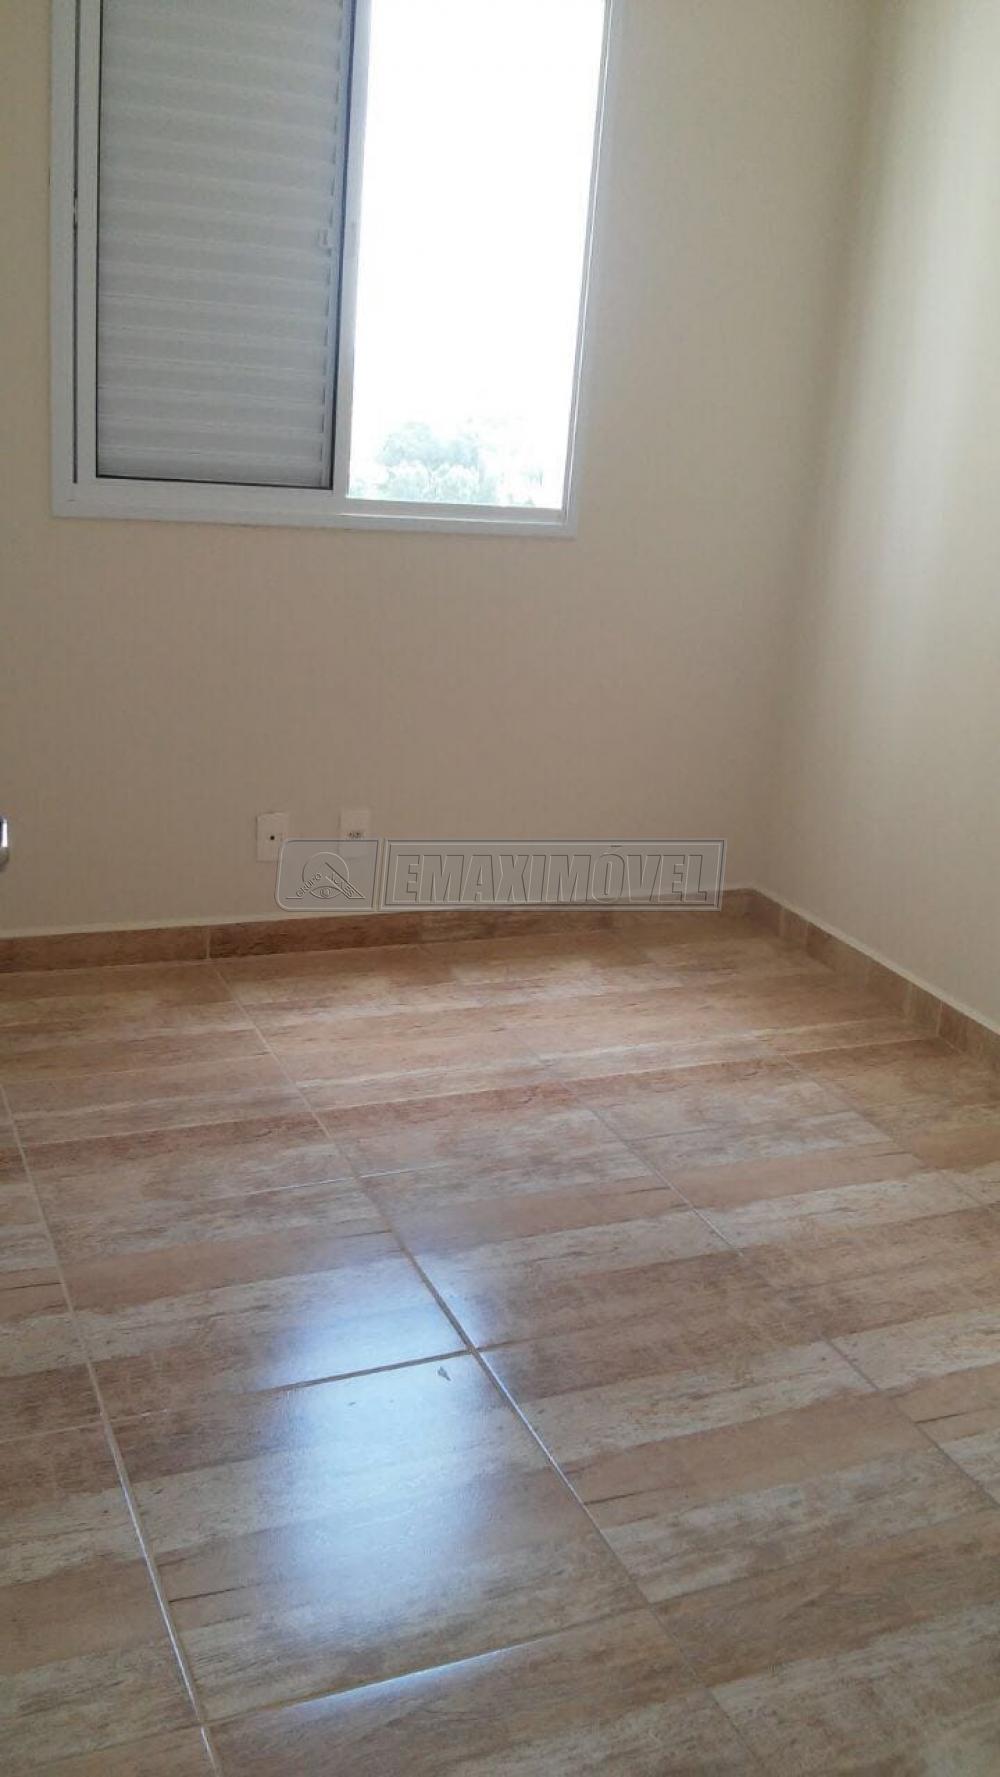 Comprar Apartamento / Padrão em Sorocaba R$ 270.000,00 - Foto 4